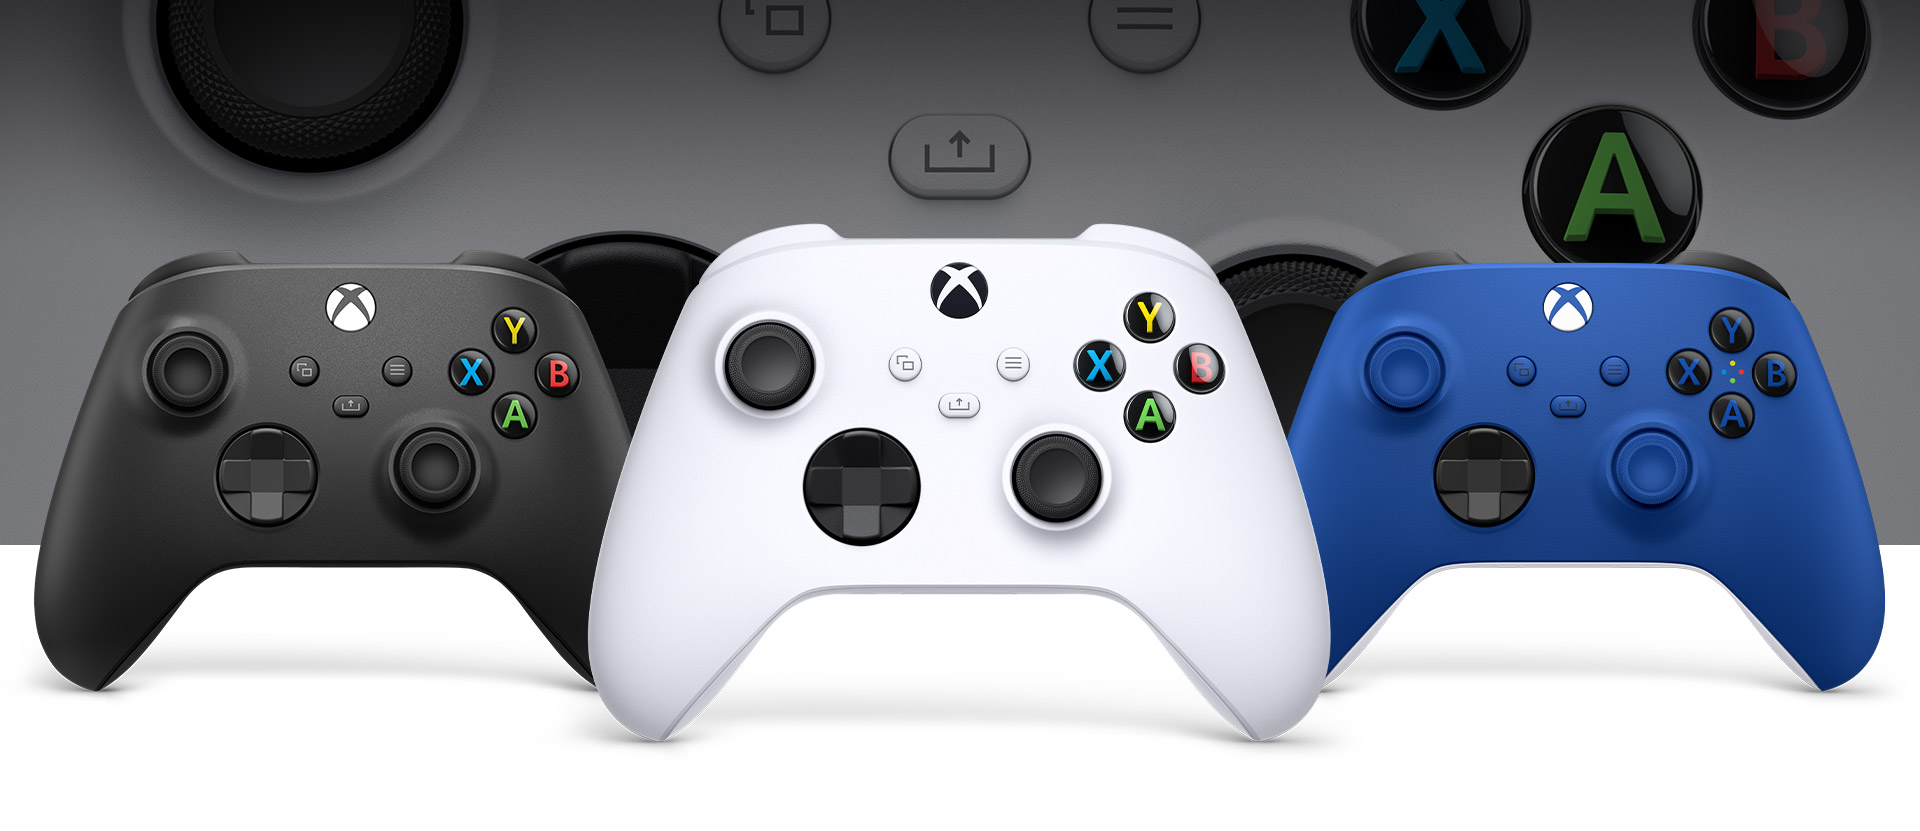 Soldaki Carbon Black ve sağdaki Shock Blue oyun kumandalarının önünde ortada duran Xbox Robot White oyun kumandası